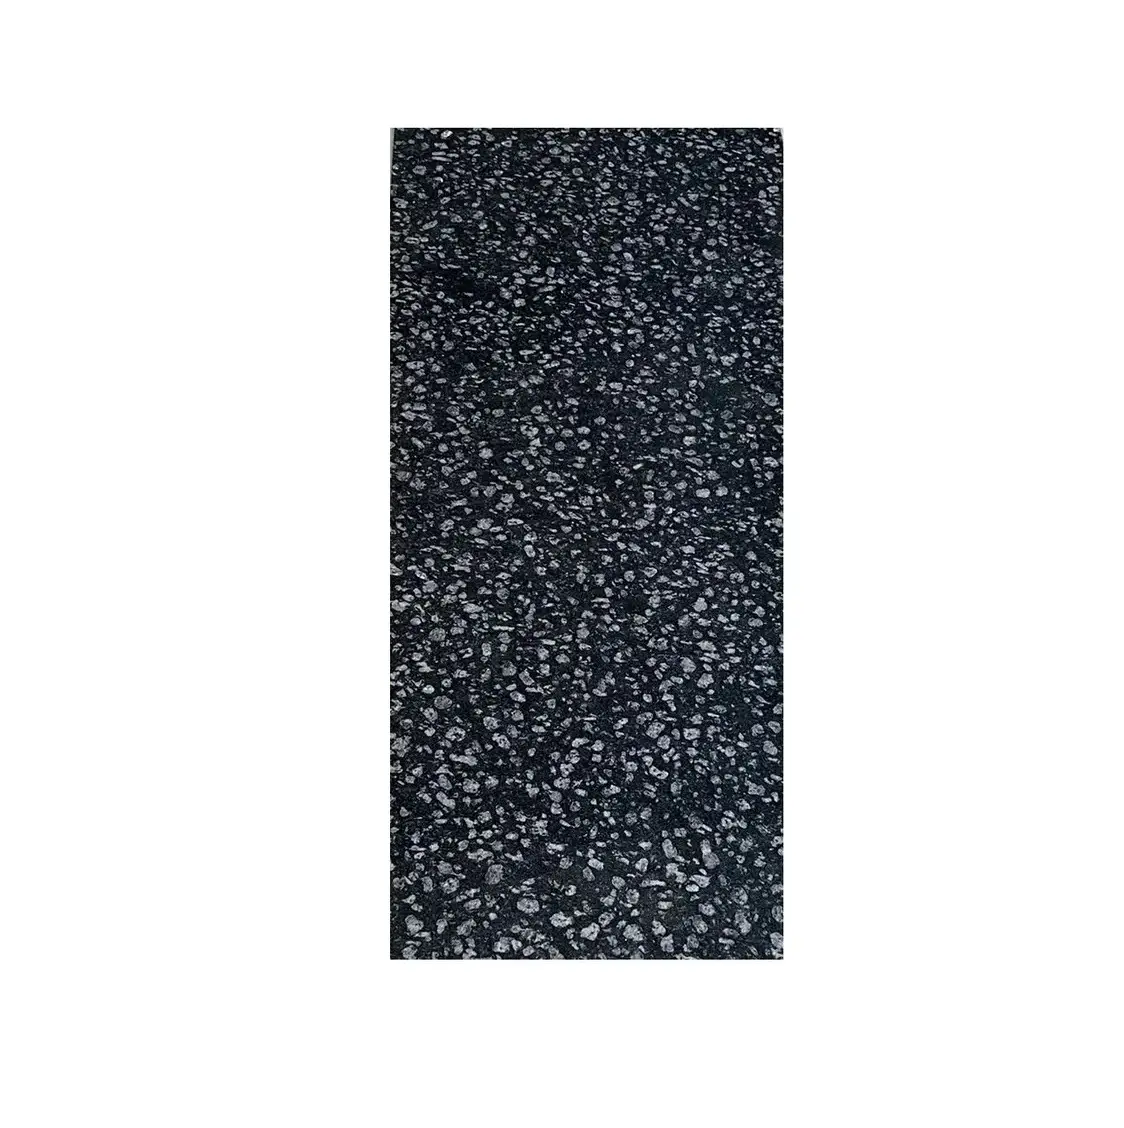 Losa de piedra natural de granito negro de moneda de alta demanda para aplicaciones de oficina, hoteles y restaurantes a la venta